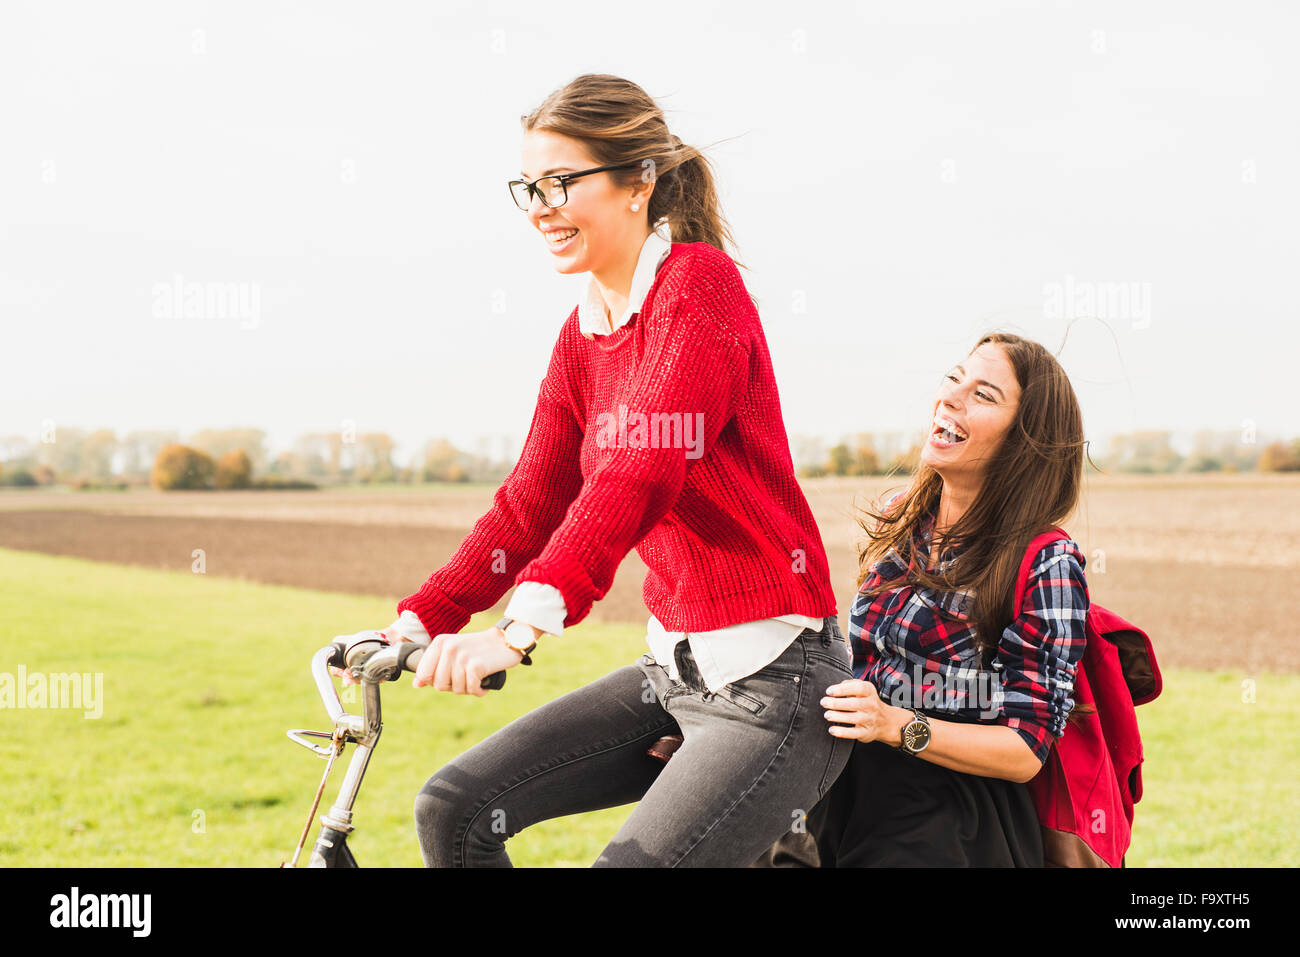 Deux professionnels des jeunes femmes partageant une bicycle in rural landscape Banque D'Images